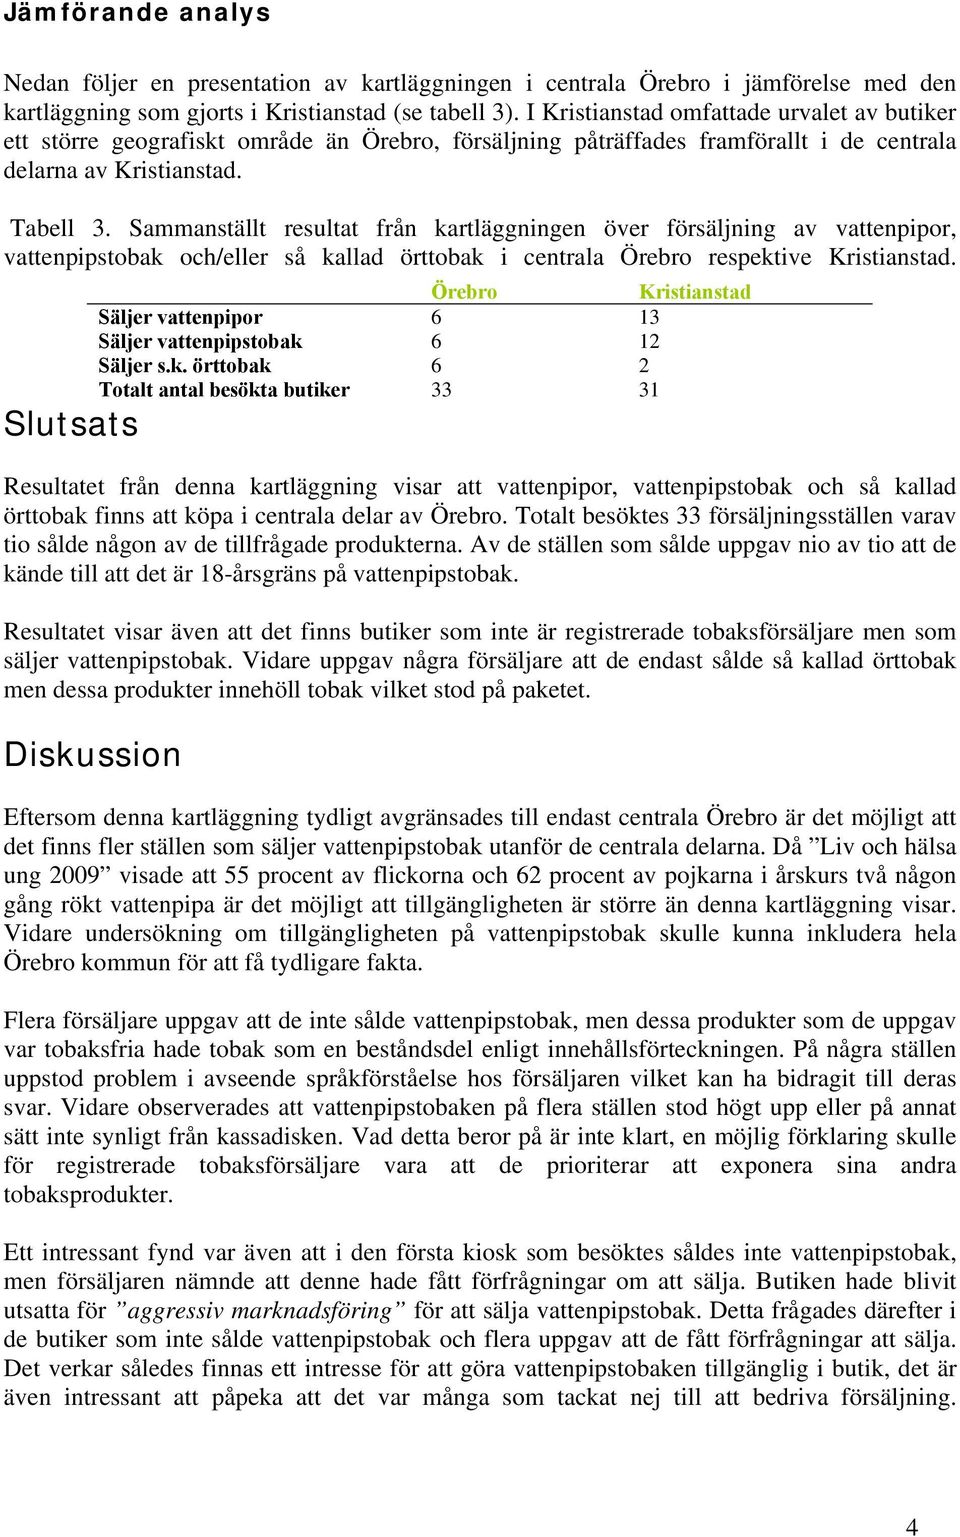 Sammanställt resultat från kartläggningen över försäljning av vattenpipor, vattenpipstobak och/eller så kallad örttobak i centrala Örebro respektive Kristianstad.